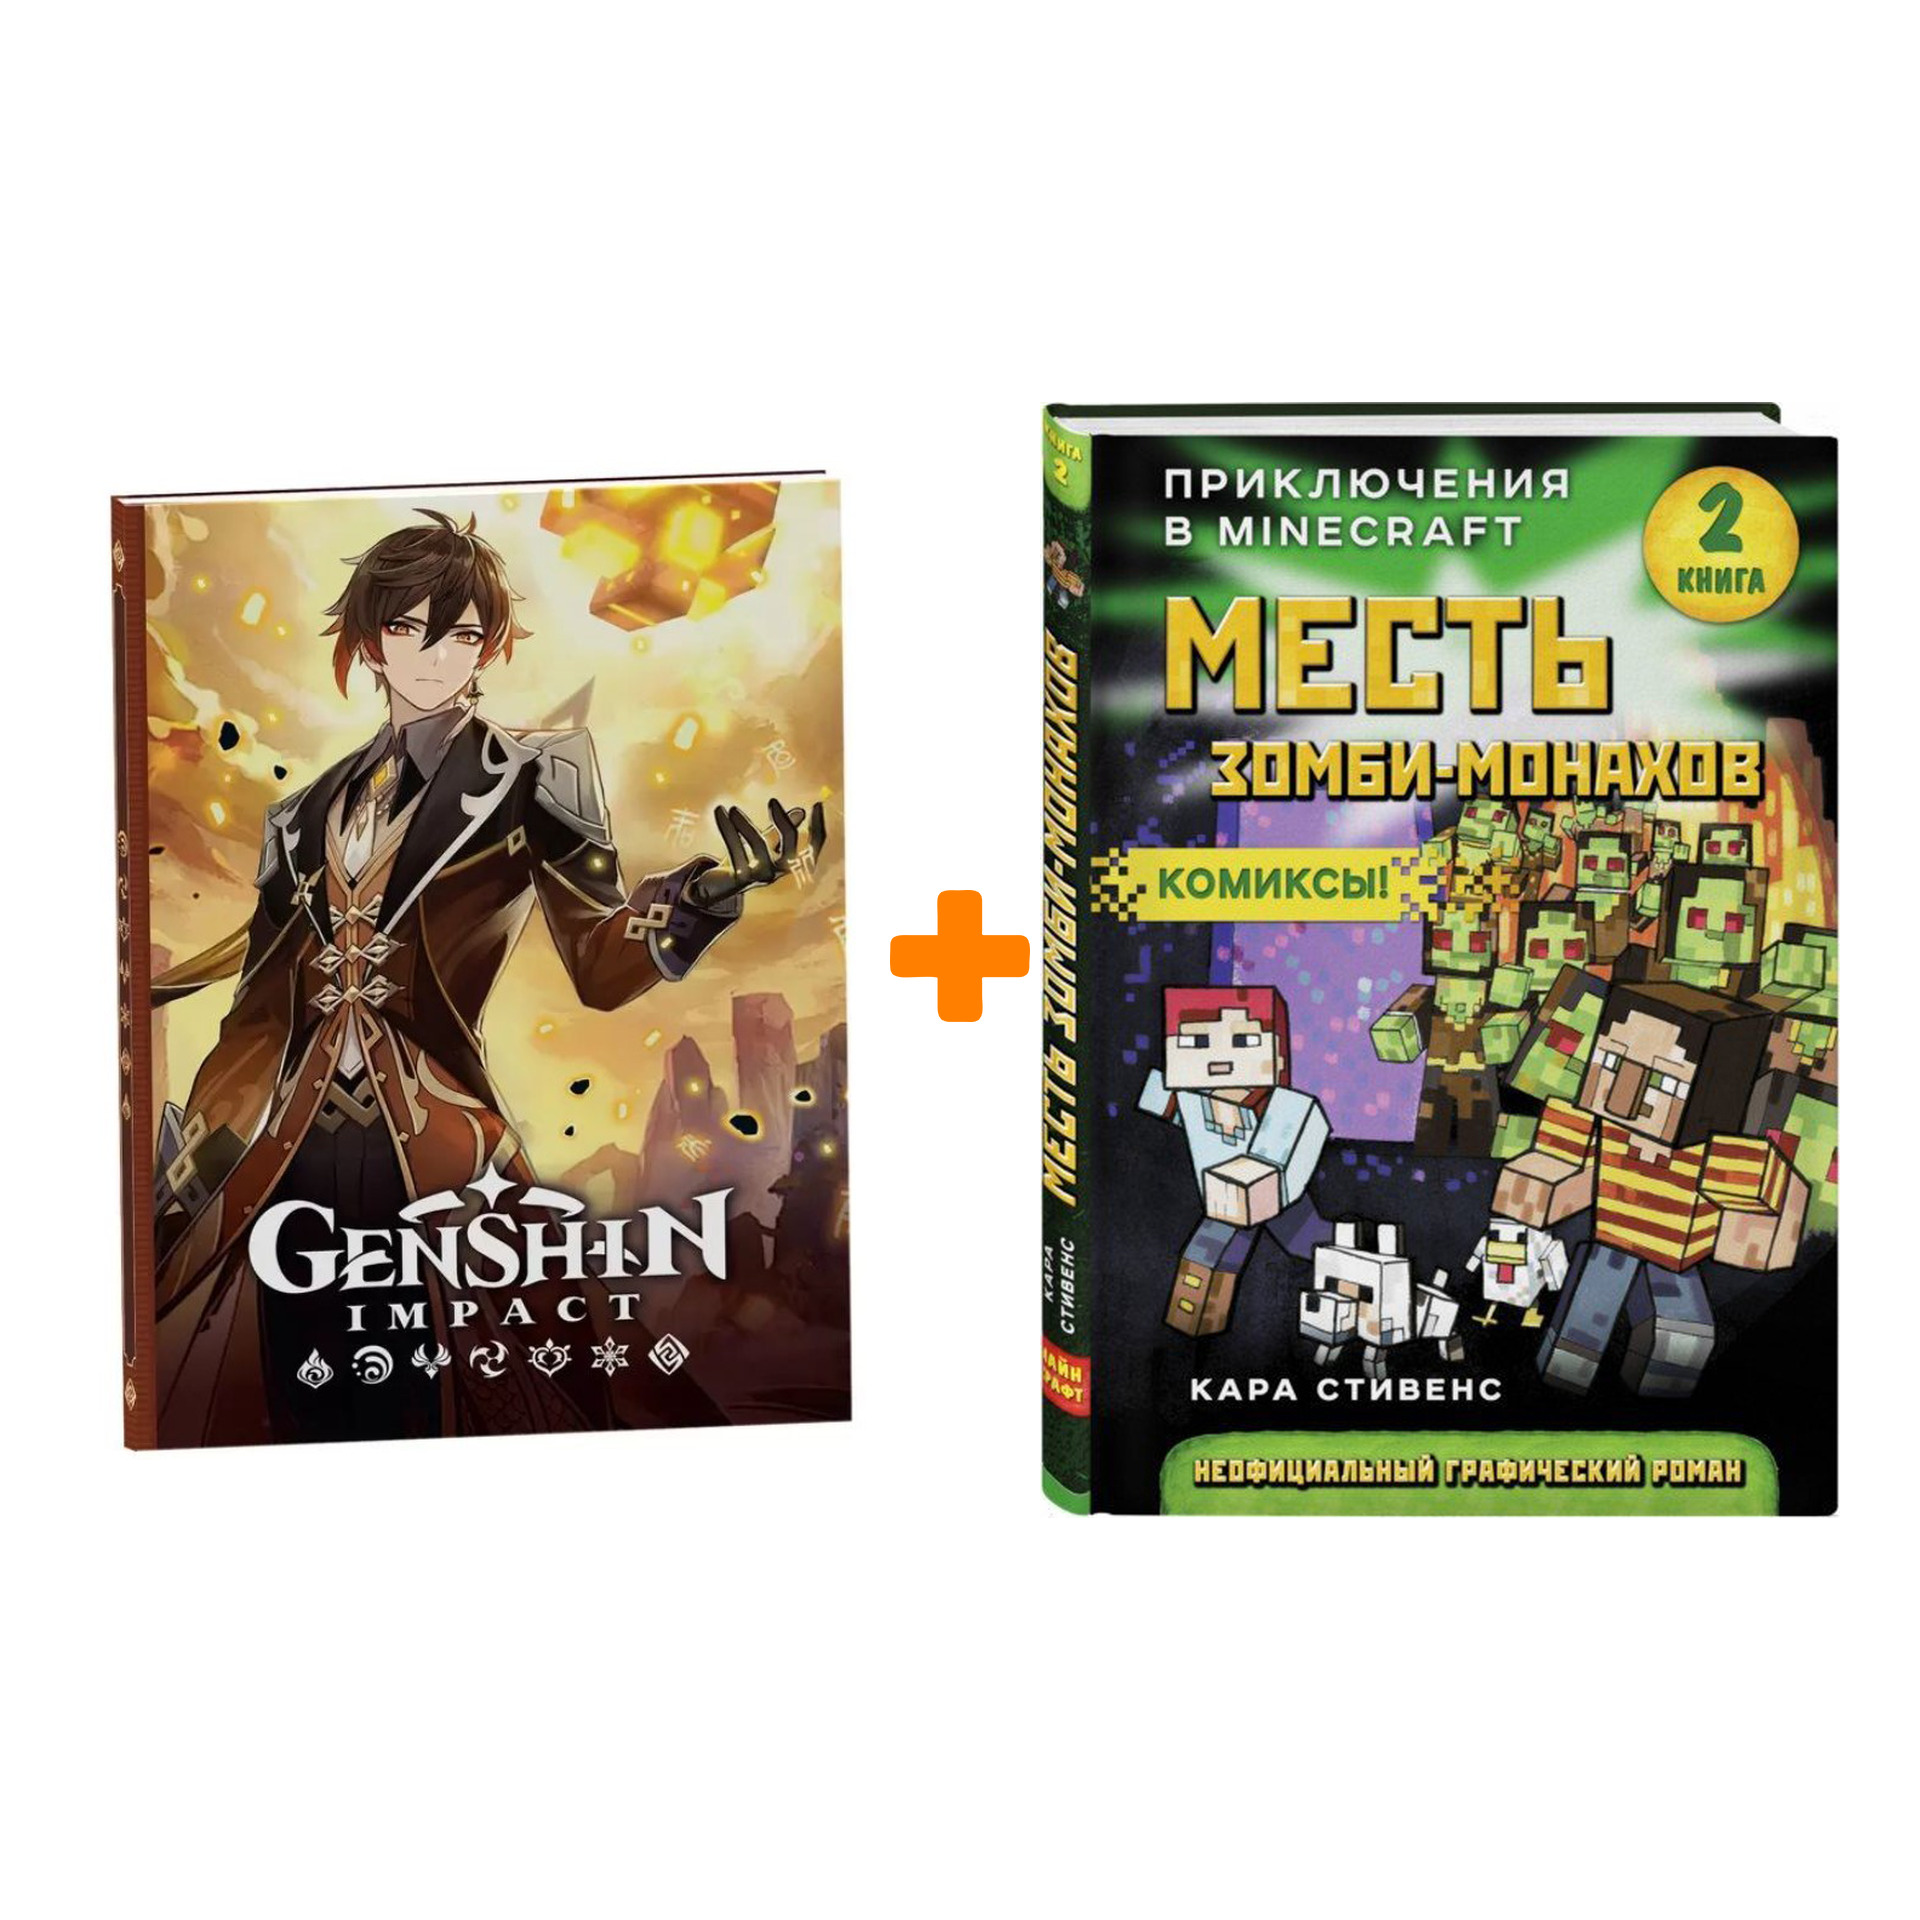 Набор Комикс Приключения в Minecraft Месть зомби-монахов Книга 2 + Блокнот Genshin Impact с наклейками коричневый